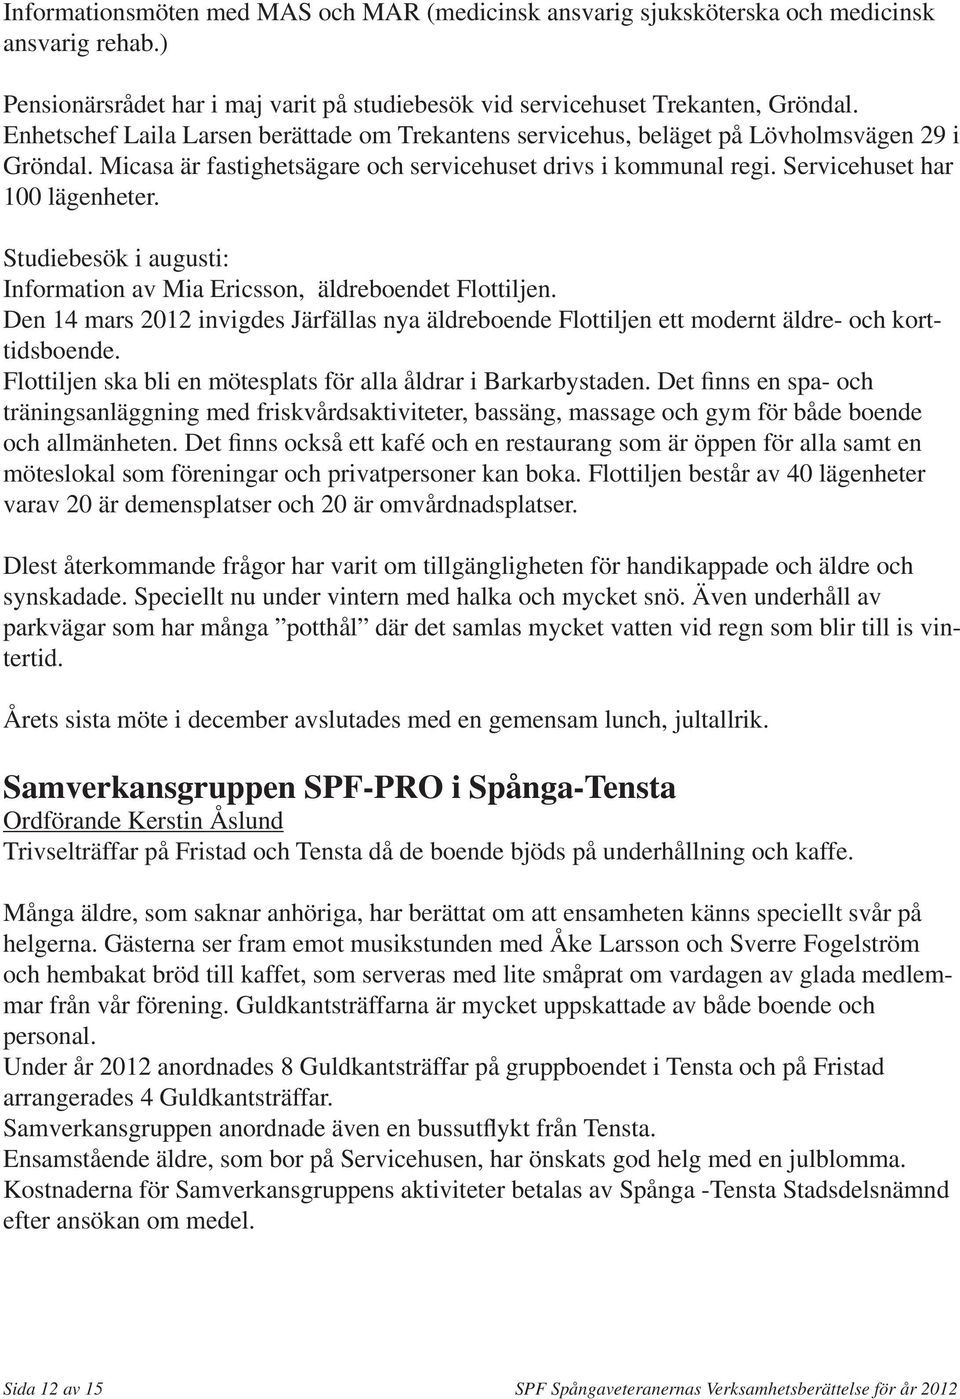 Studiebesök i augusti: Information av Mia Ericsson, äldreboendet Flottiljen. Den 14 mars 2012 invigdes Järfällas nya äldreboende Flottiljen ett modernt äldre- och korttidsboende.